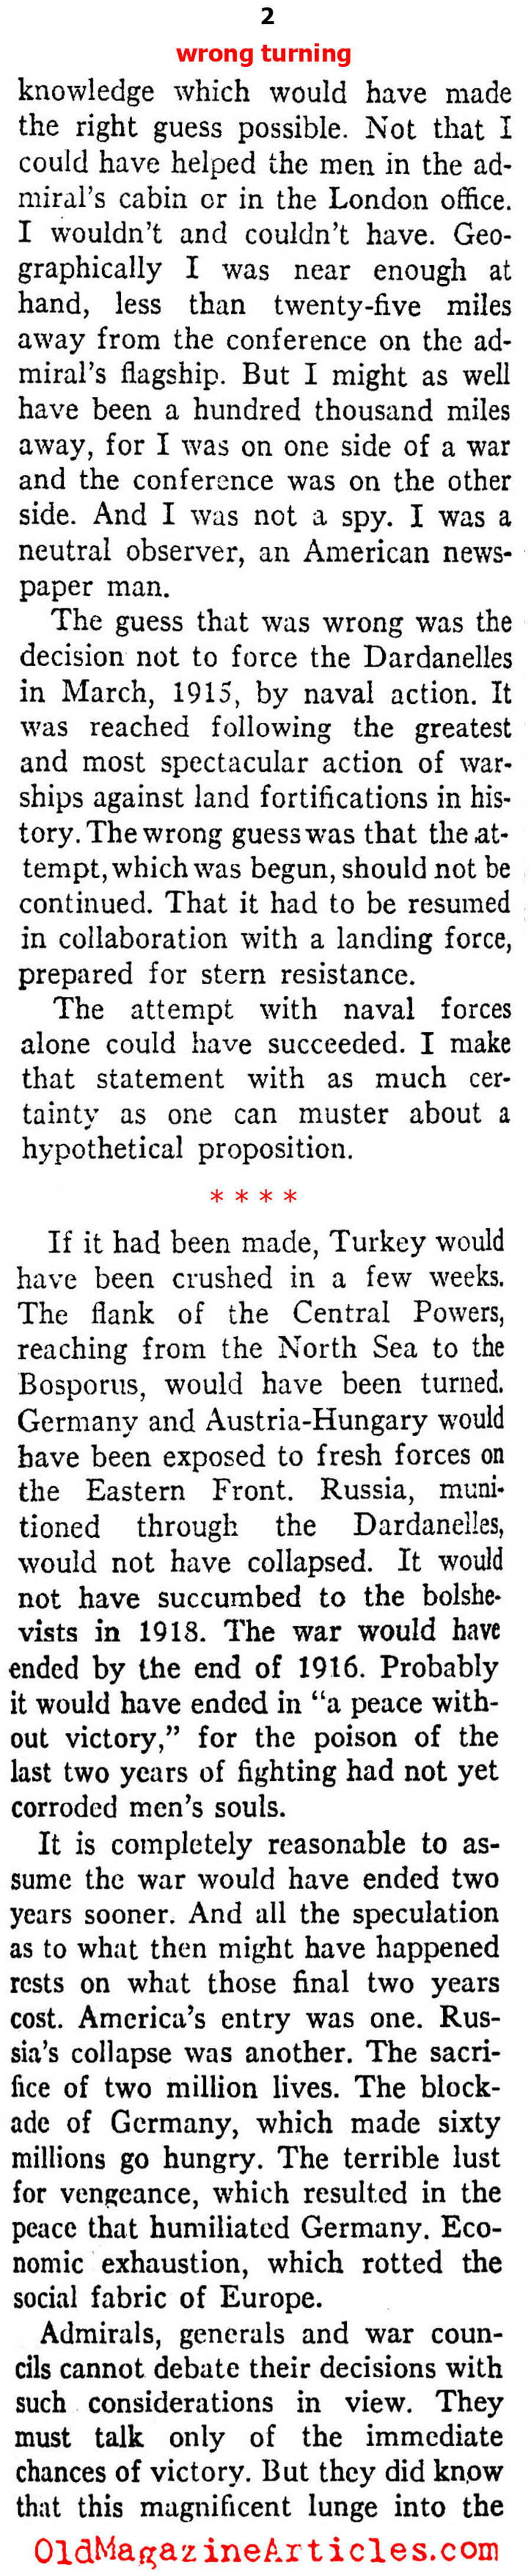 Wrong Turn at Gallipoli (Ken Magazine, 1938)